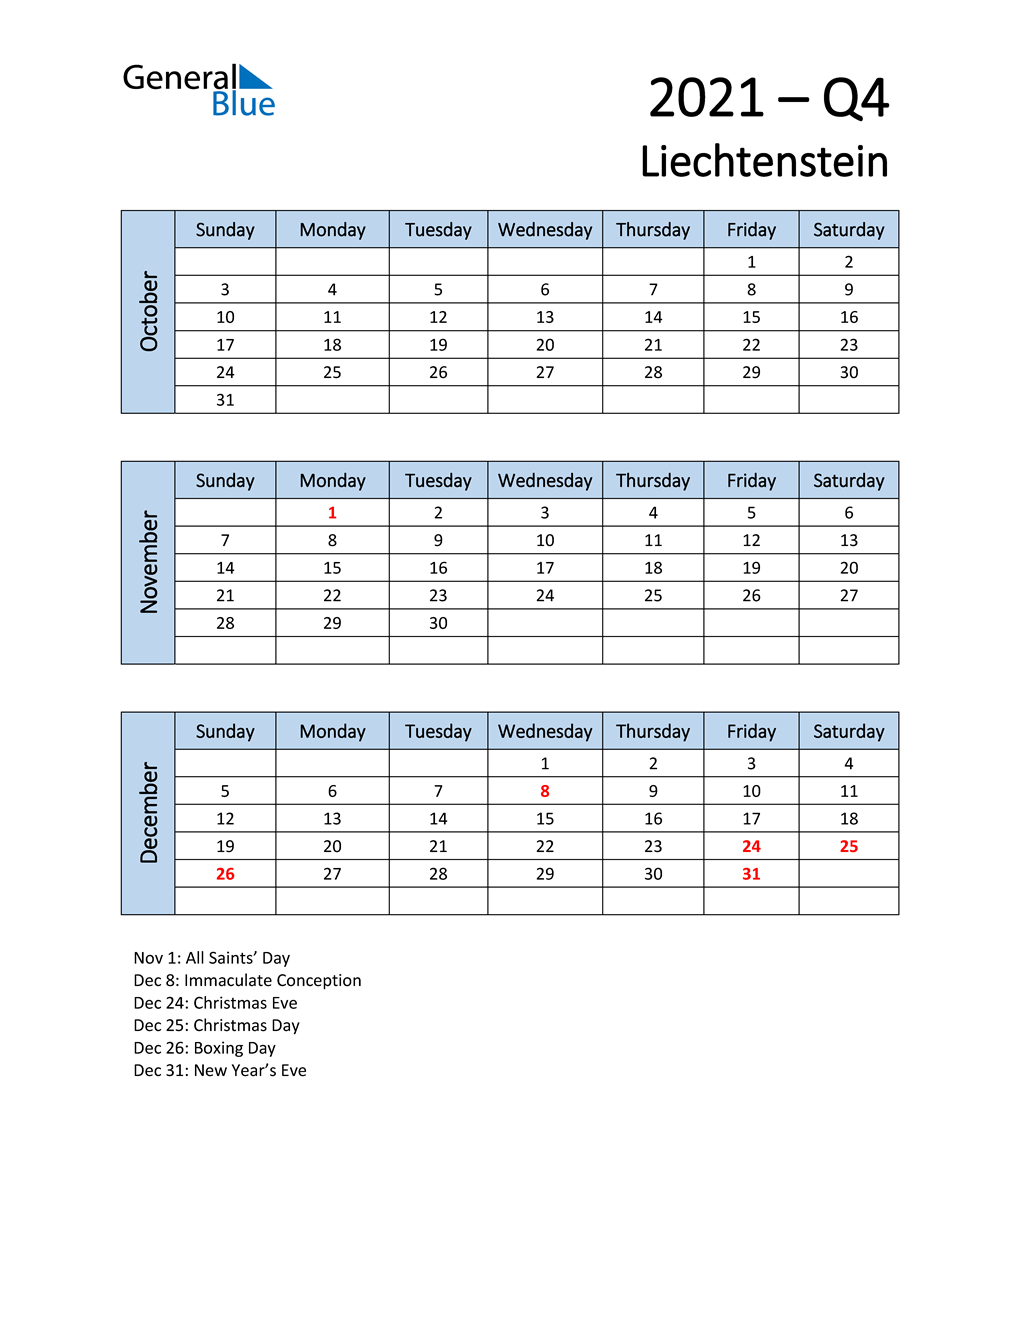  Free Q4 2021 Calendar for Liechtenstein